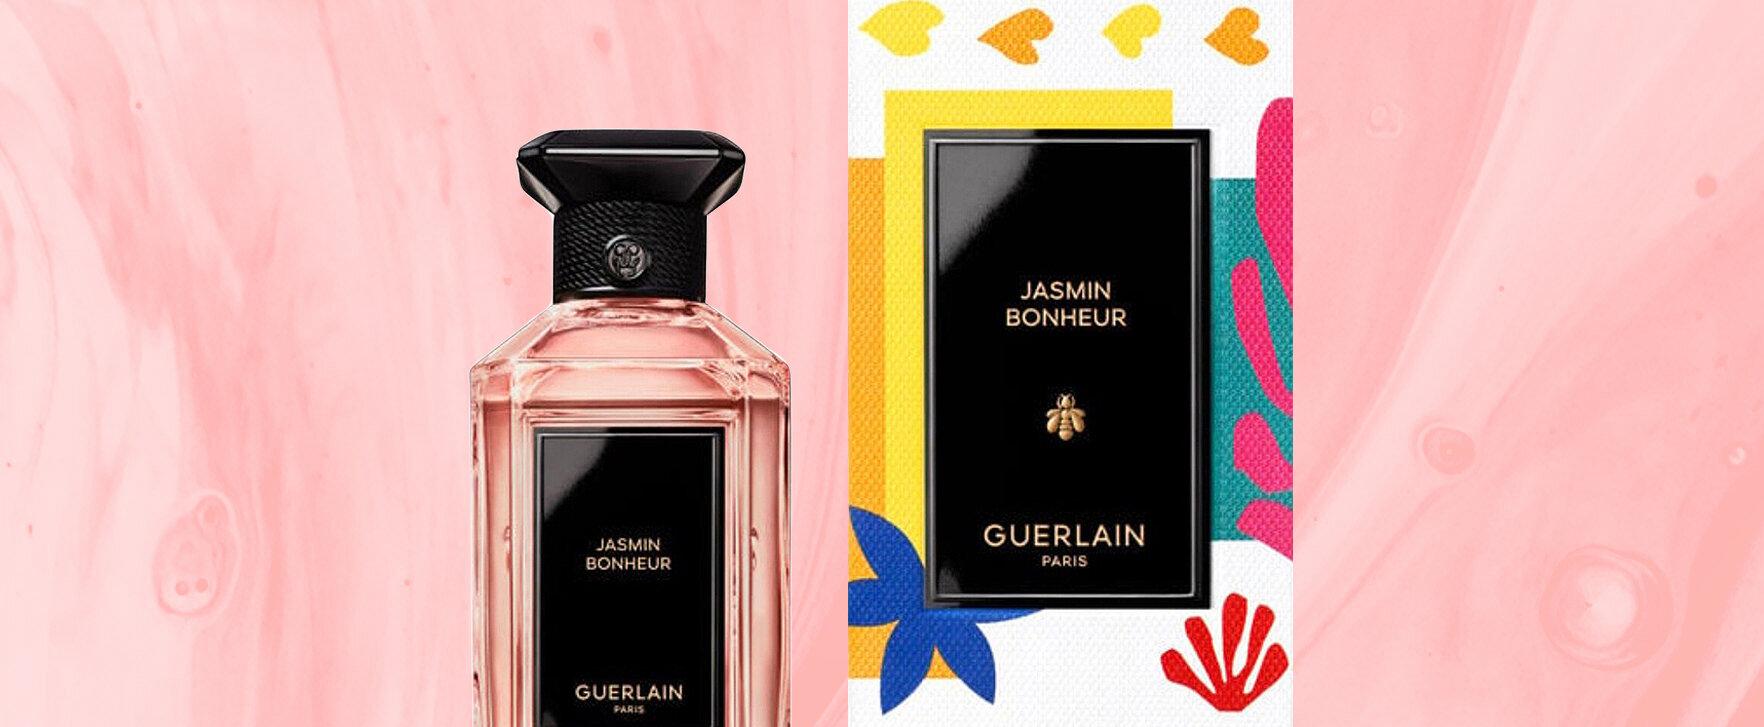 “Jasmin Bonheur” - New Jasmine Fragrance by Guerlain Expands “L’Art & la Matière” Collection